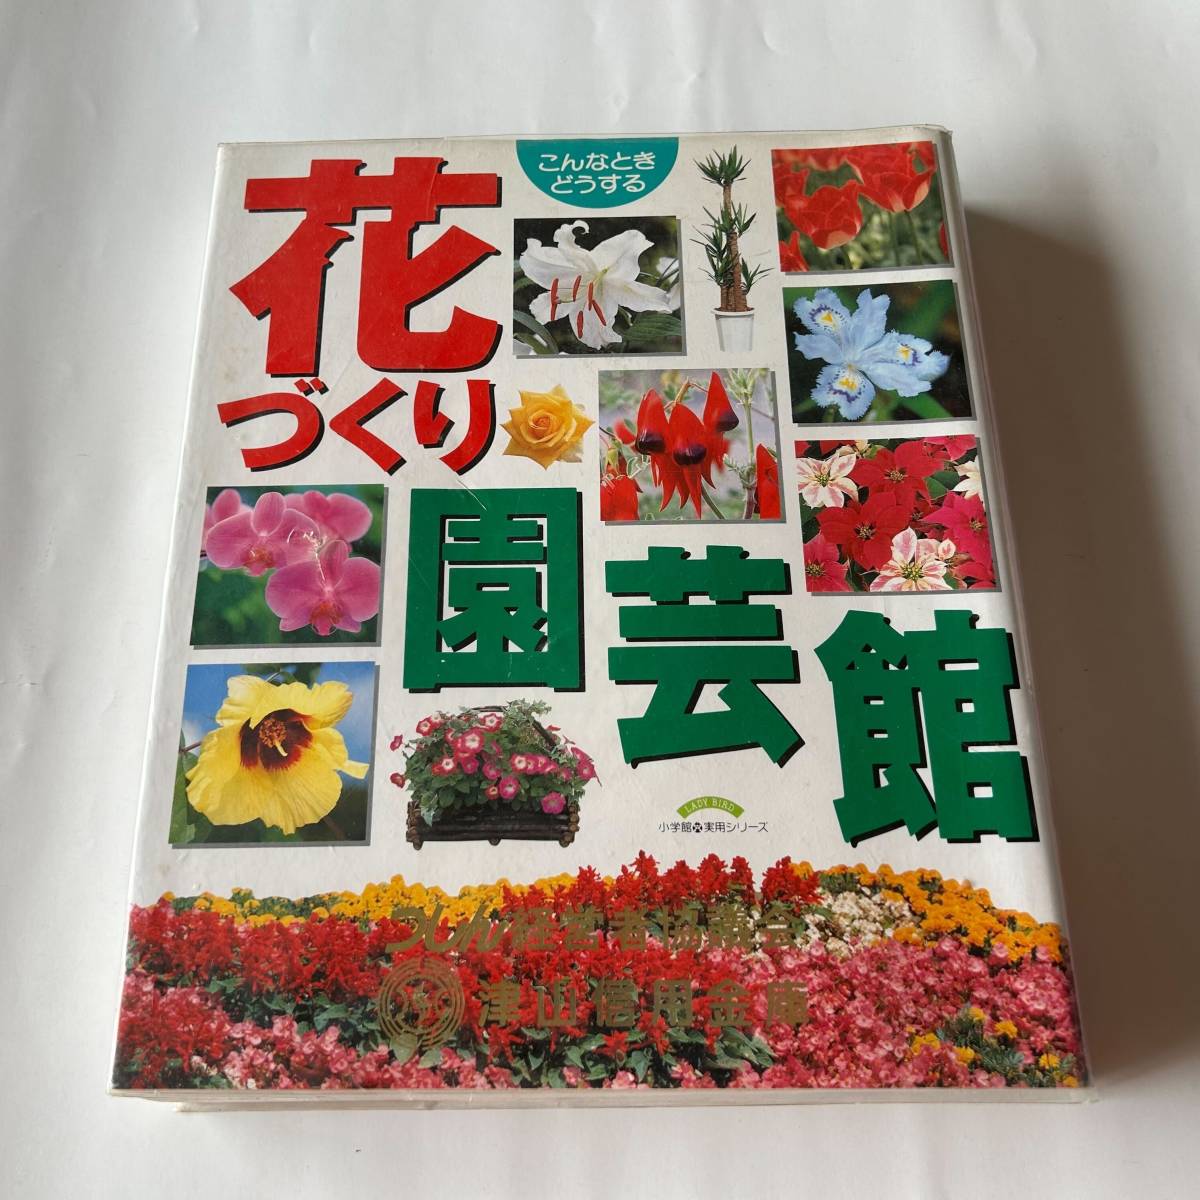  Shogakukan Inc. практическое использование Mucc такой время что делать цветок ... садоводство павильон 1998 год эпоха Heisei 10 год 2 месяц 20 день no. 6.